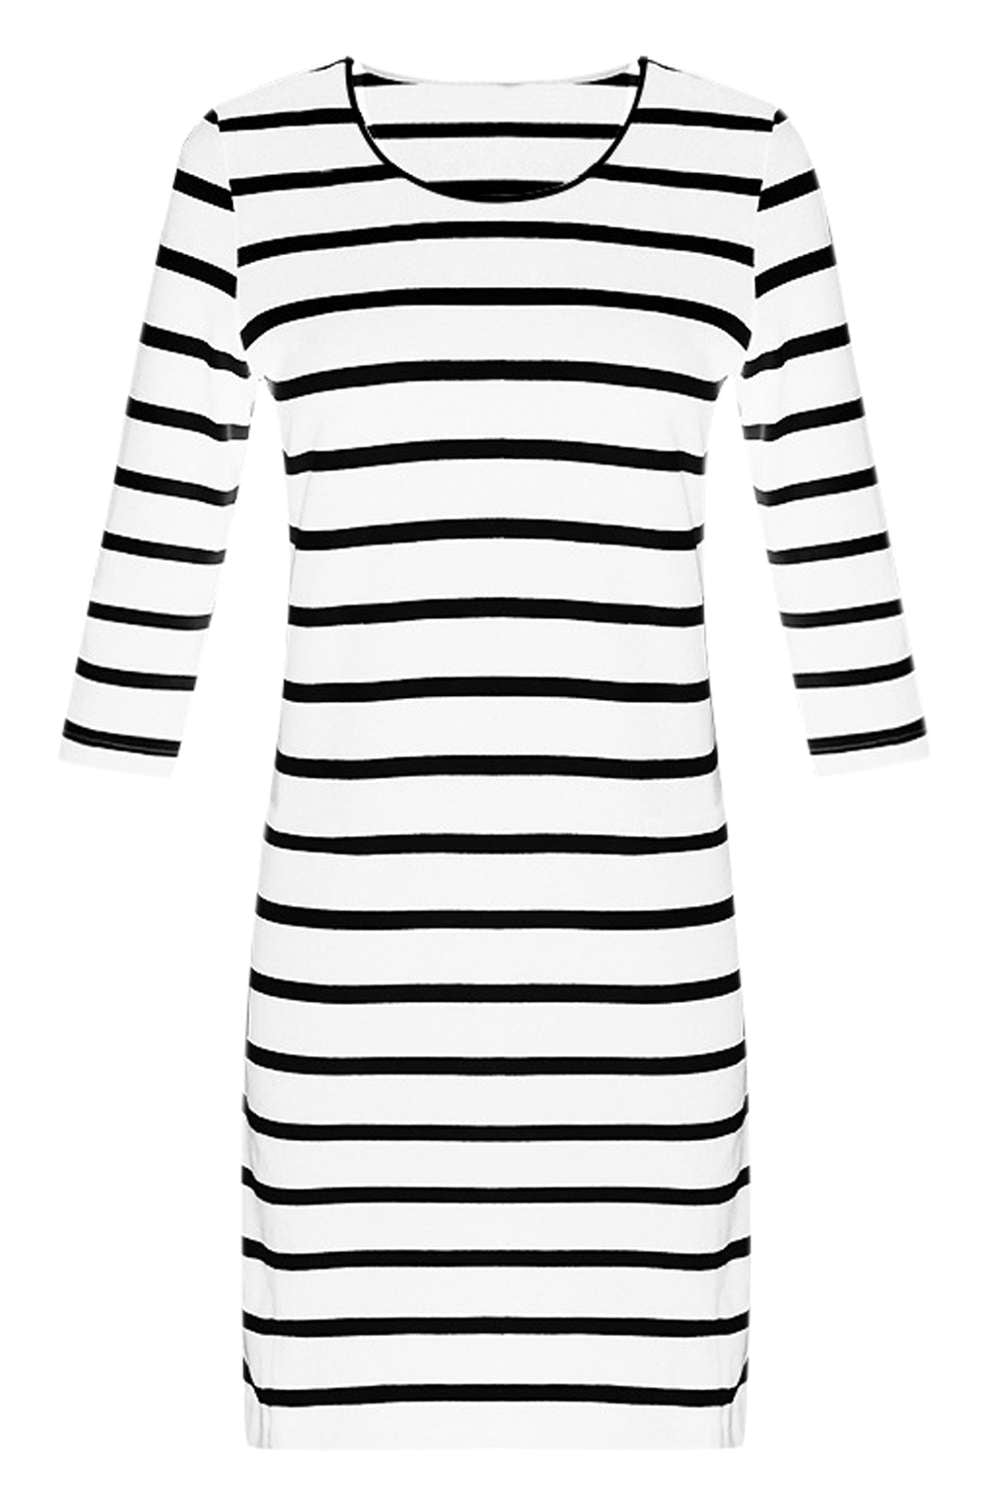 Iyasson Women's Striped Bodycon Dress